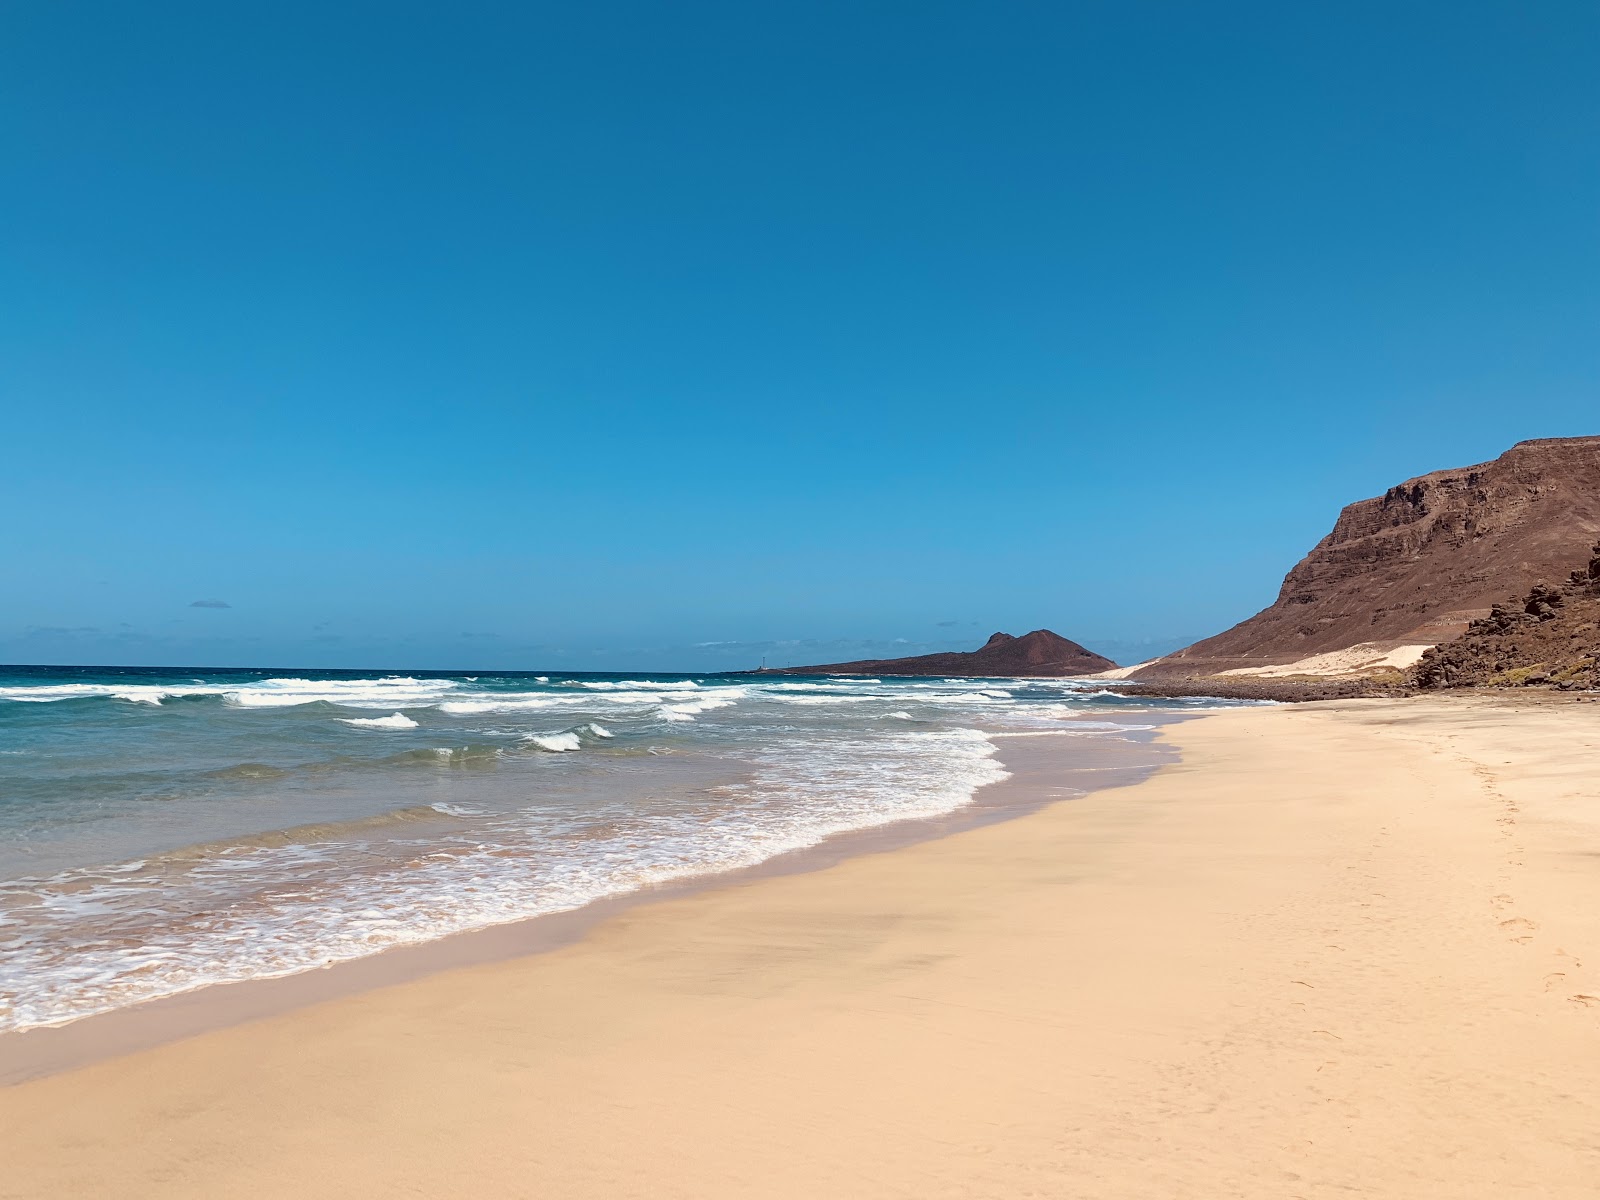 Praia Grande'in fotoğrafı parlak kum ve kayalar yüzey ile